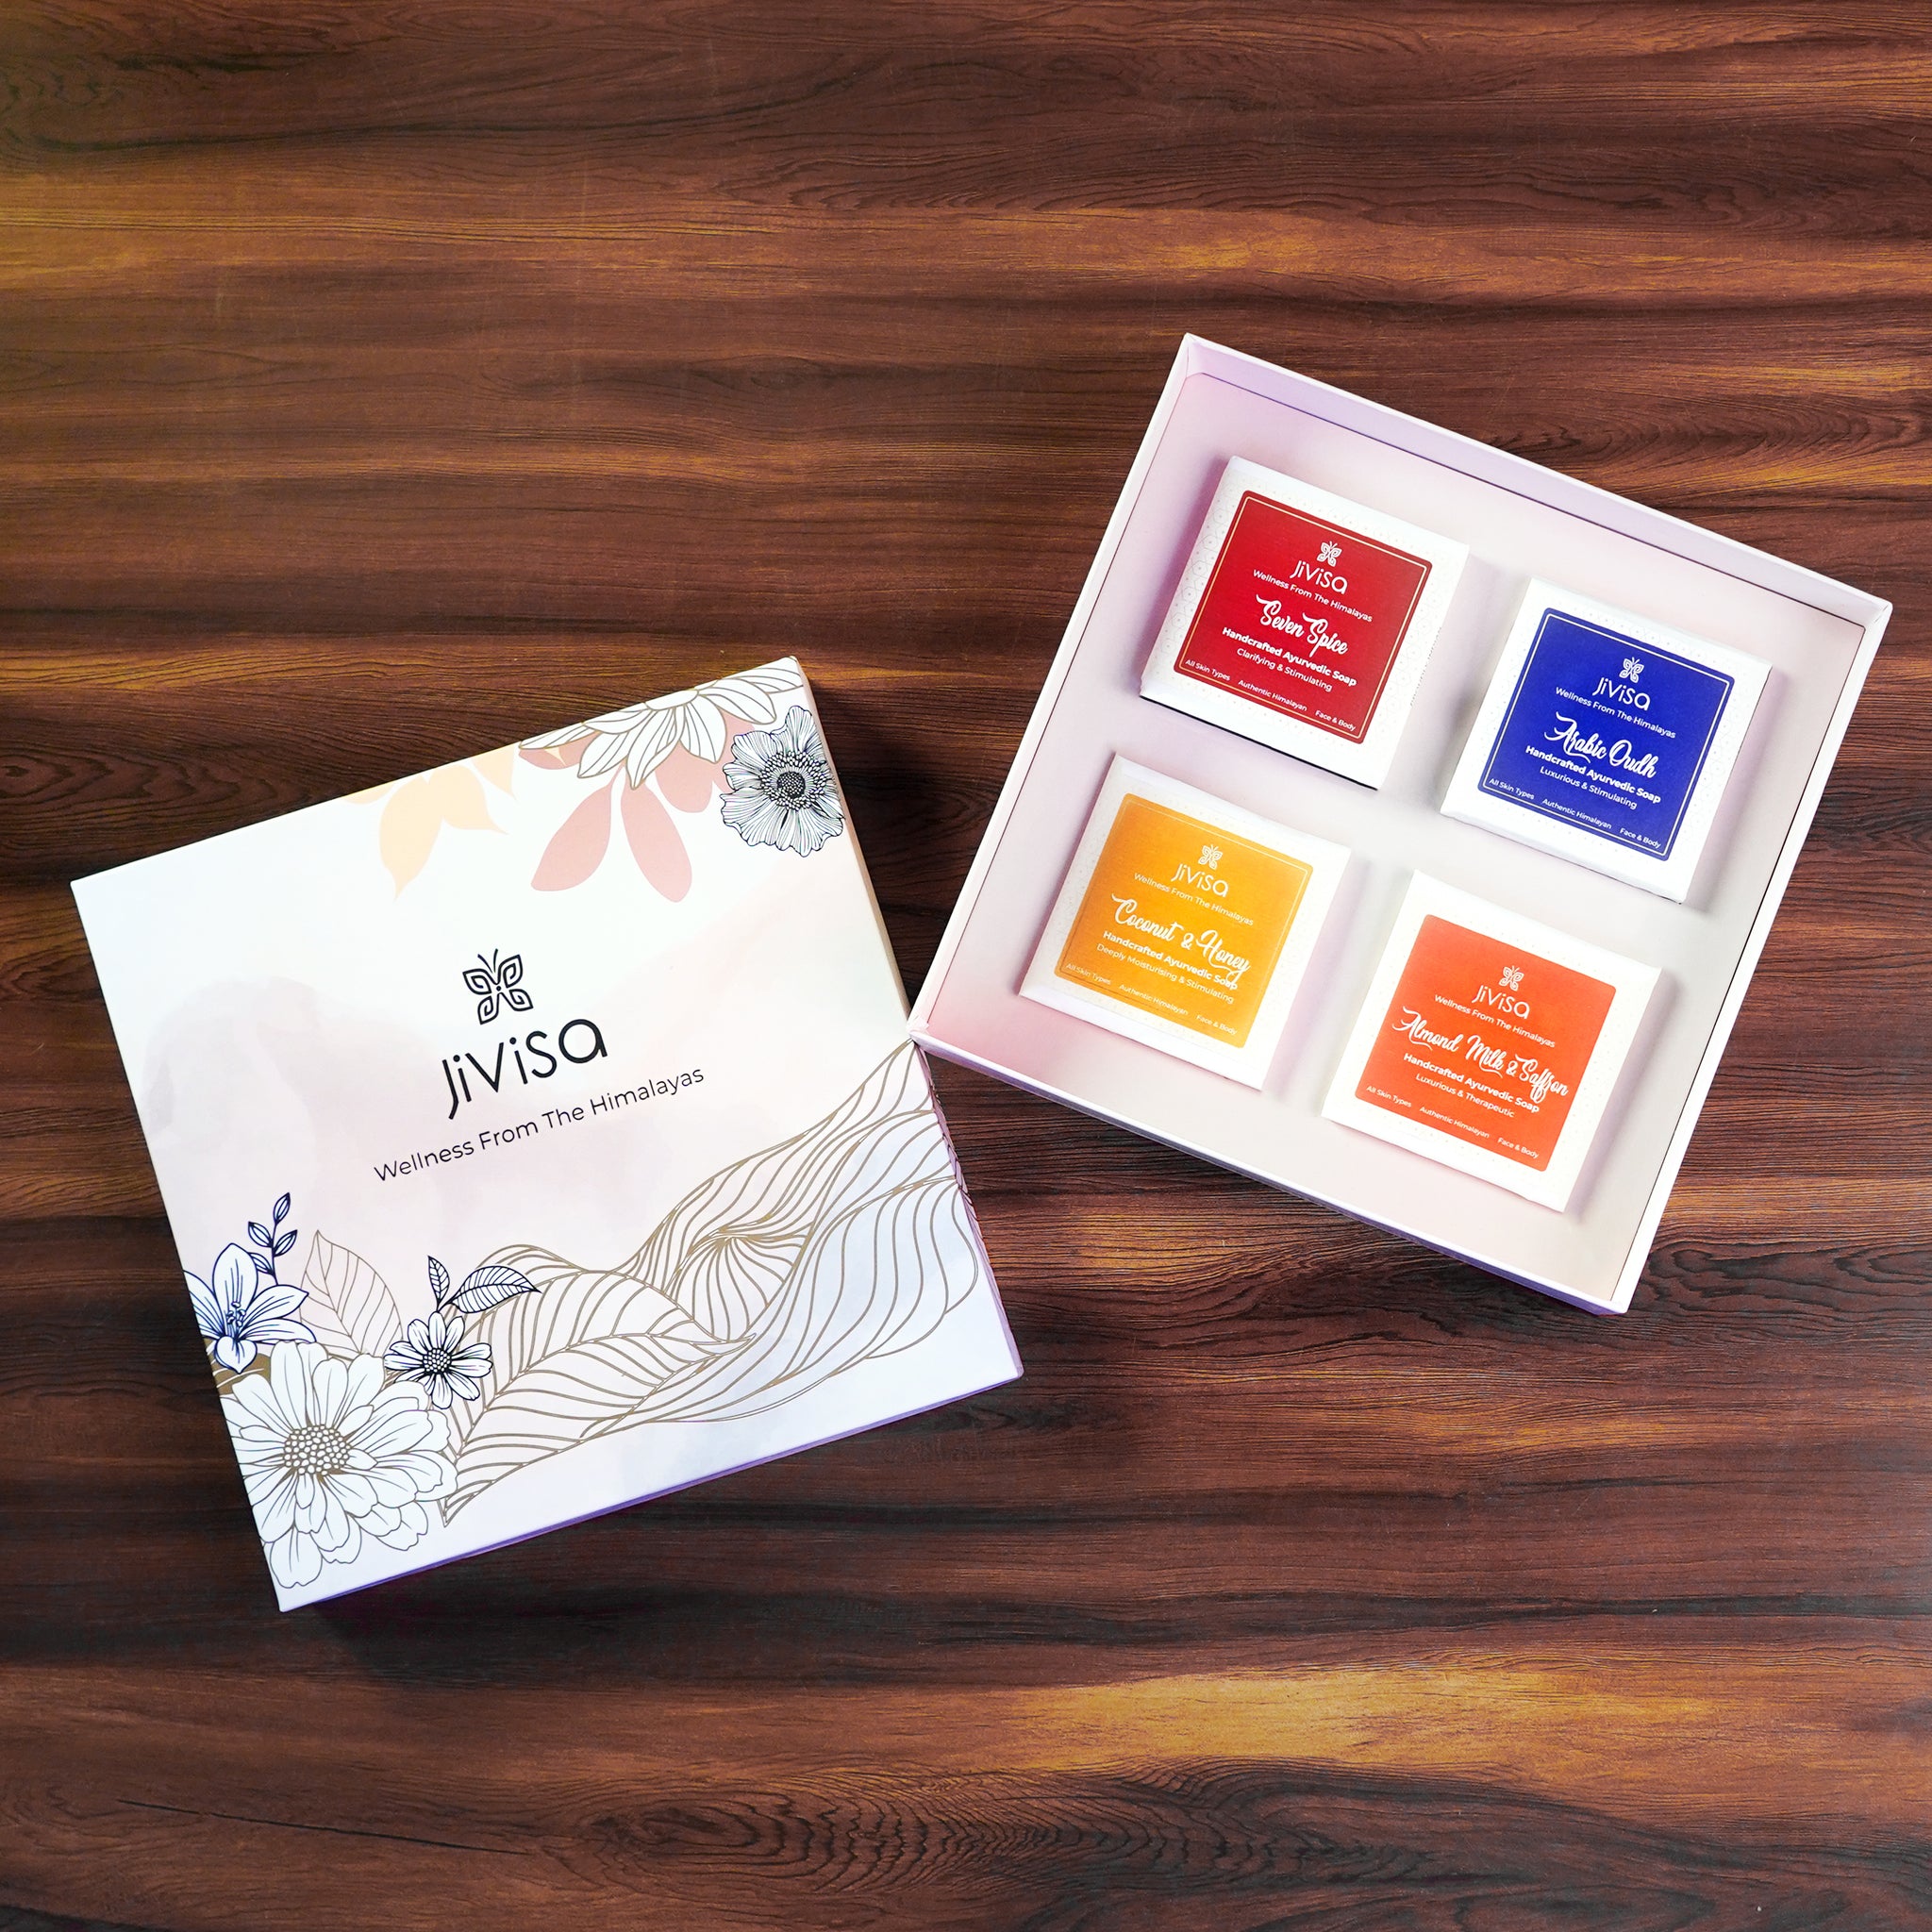 JiViSa Luxury Handmade Soaps Gift Box